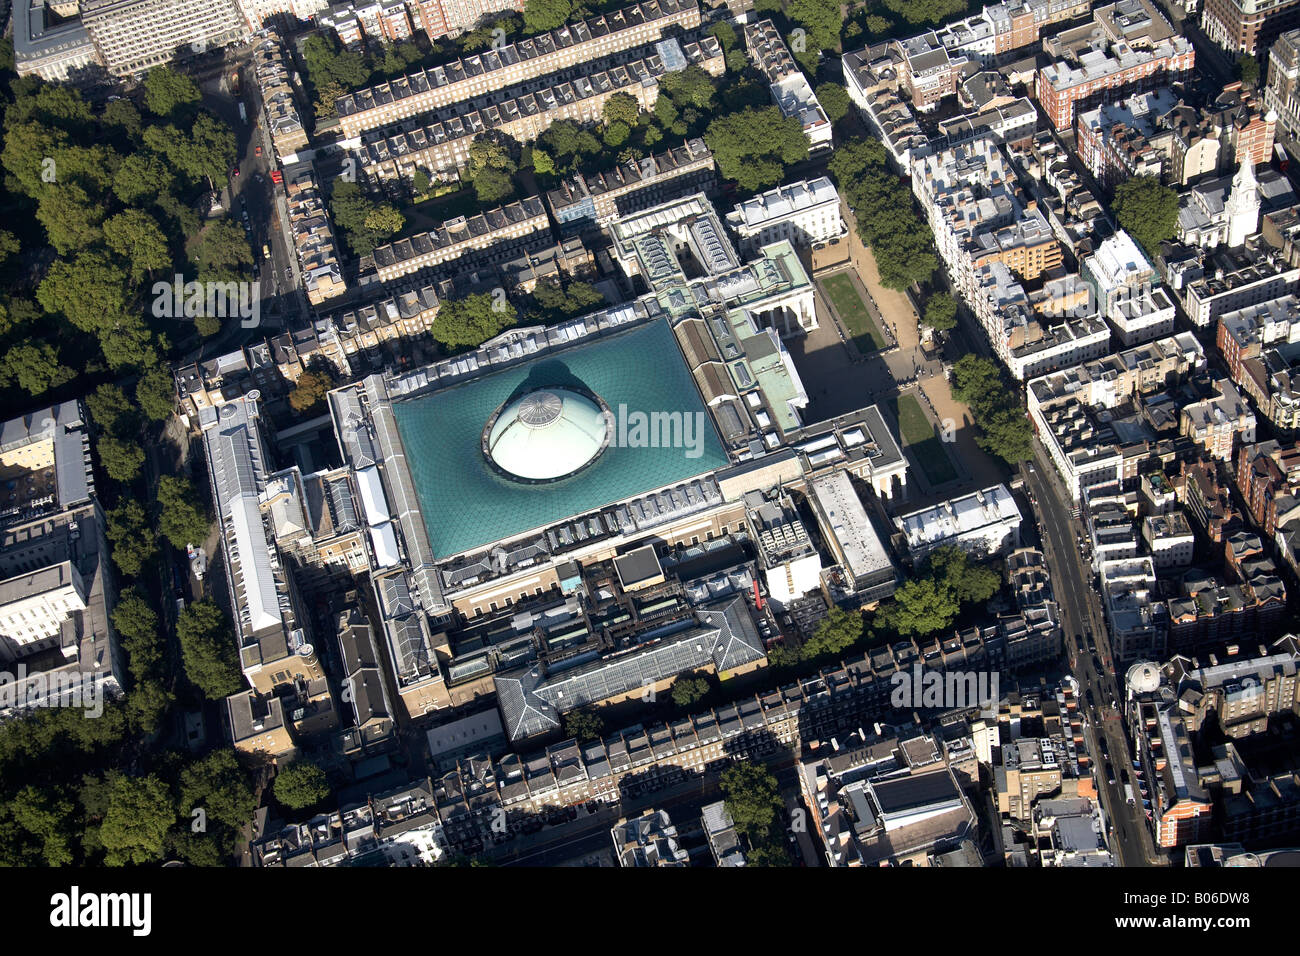 Vue aérienne au nord-est de la British Museum Bloomsbury Londres WC1 England UK Banque D'Images